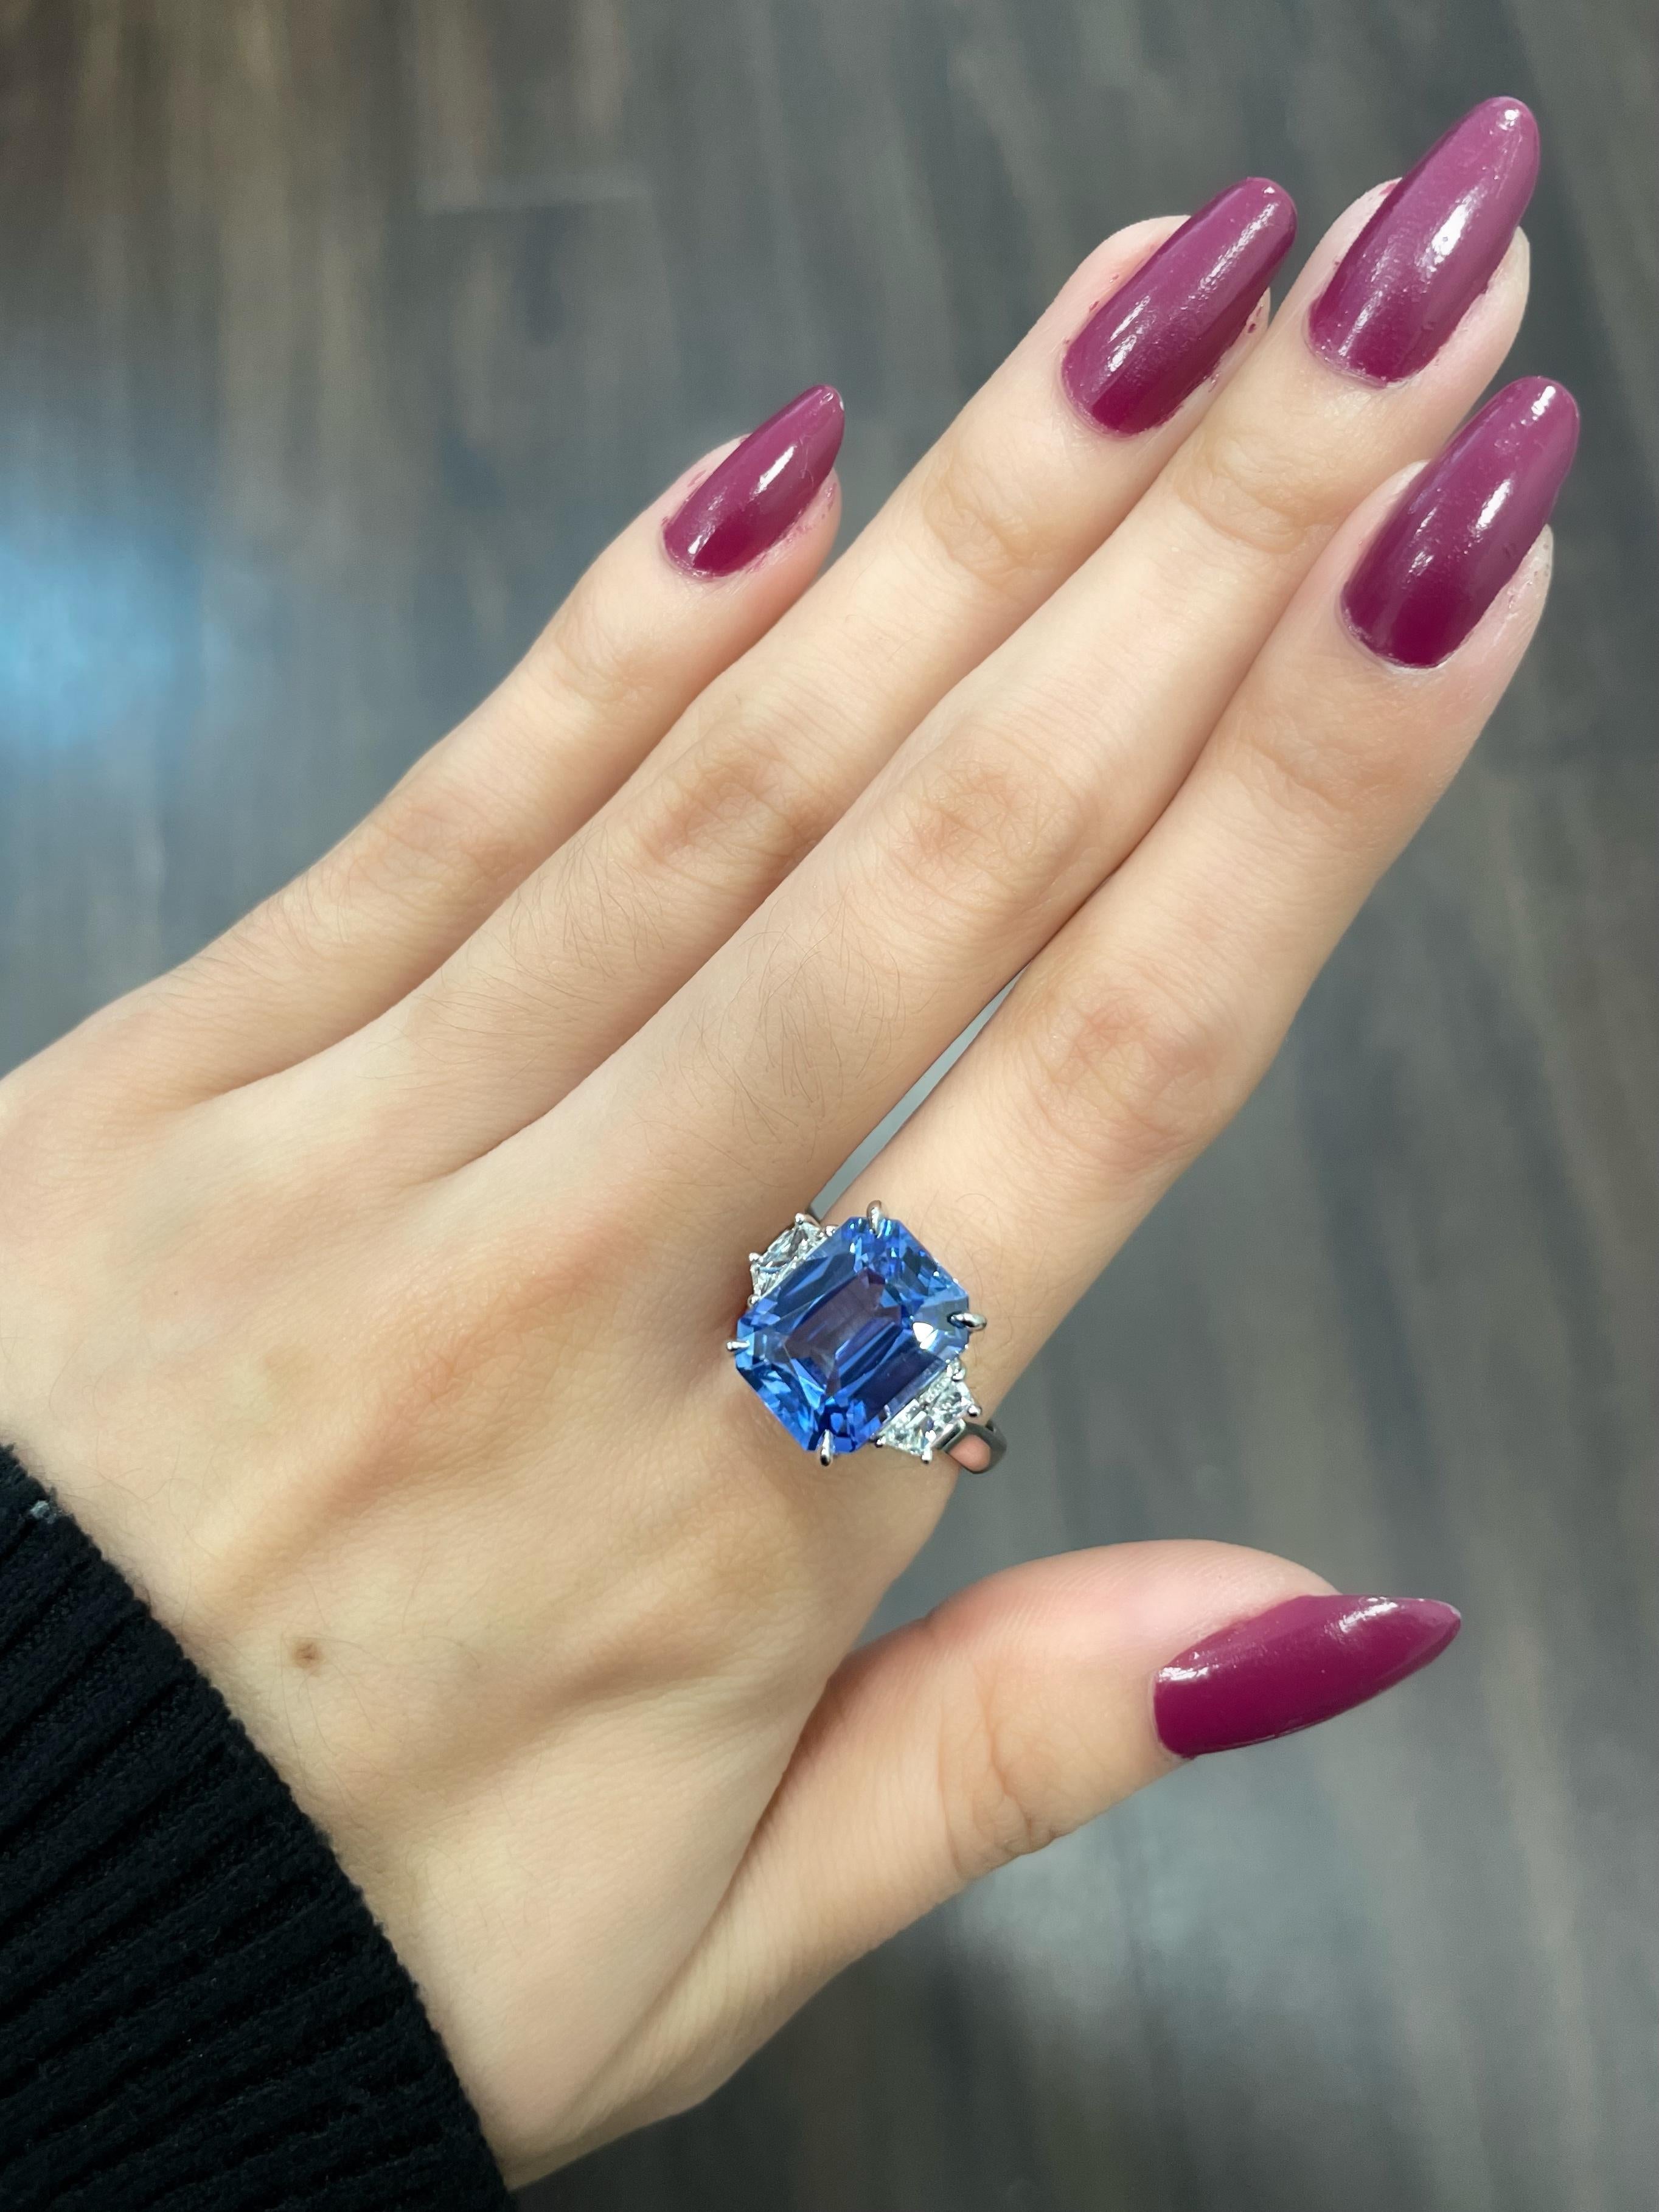 La bague en saphir bleu de Ceylan et diamant de 7,45 ct est un bijou époustouflant qui vous coupera le souffle. La couleur bleu profond du saphir est vraiment fascinante et attirera l'attention de tous ceux qui le verront. Le saphir est